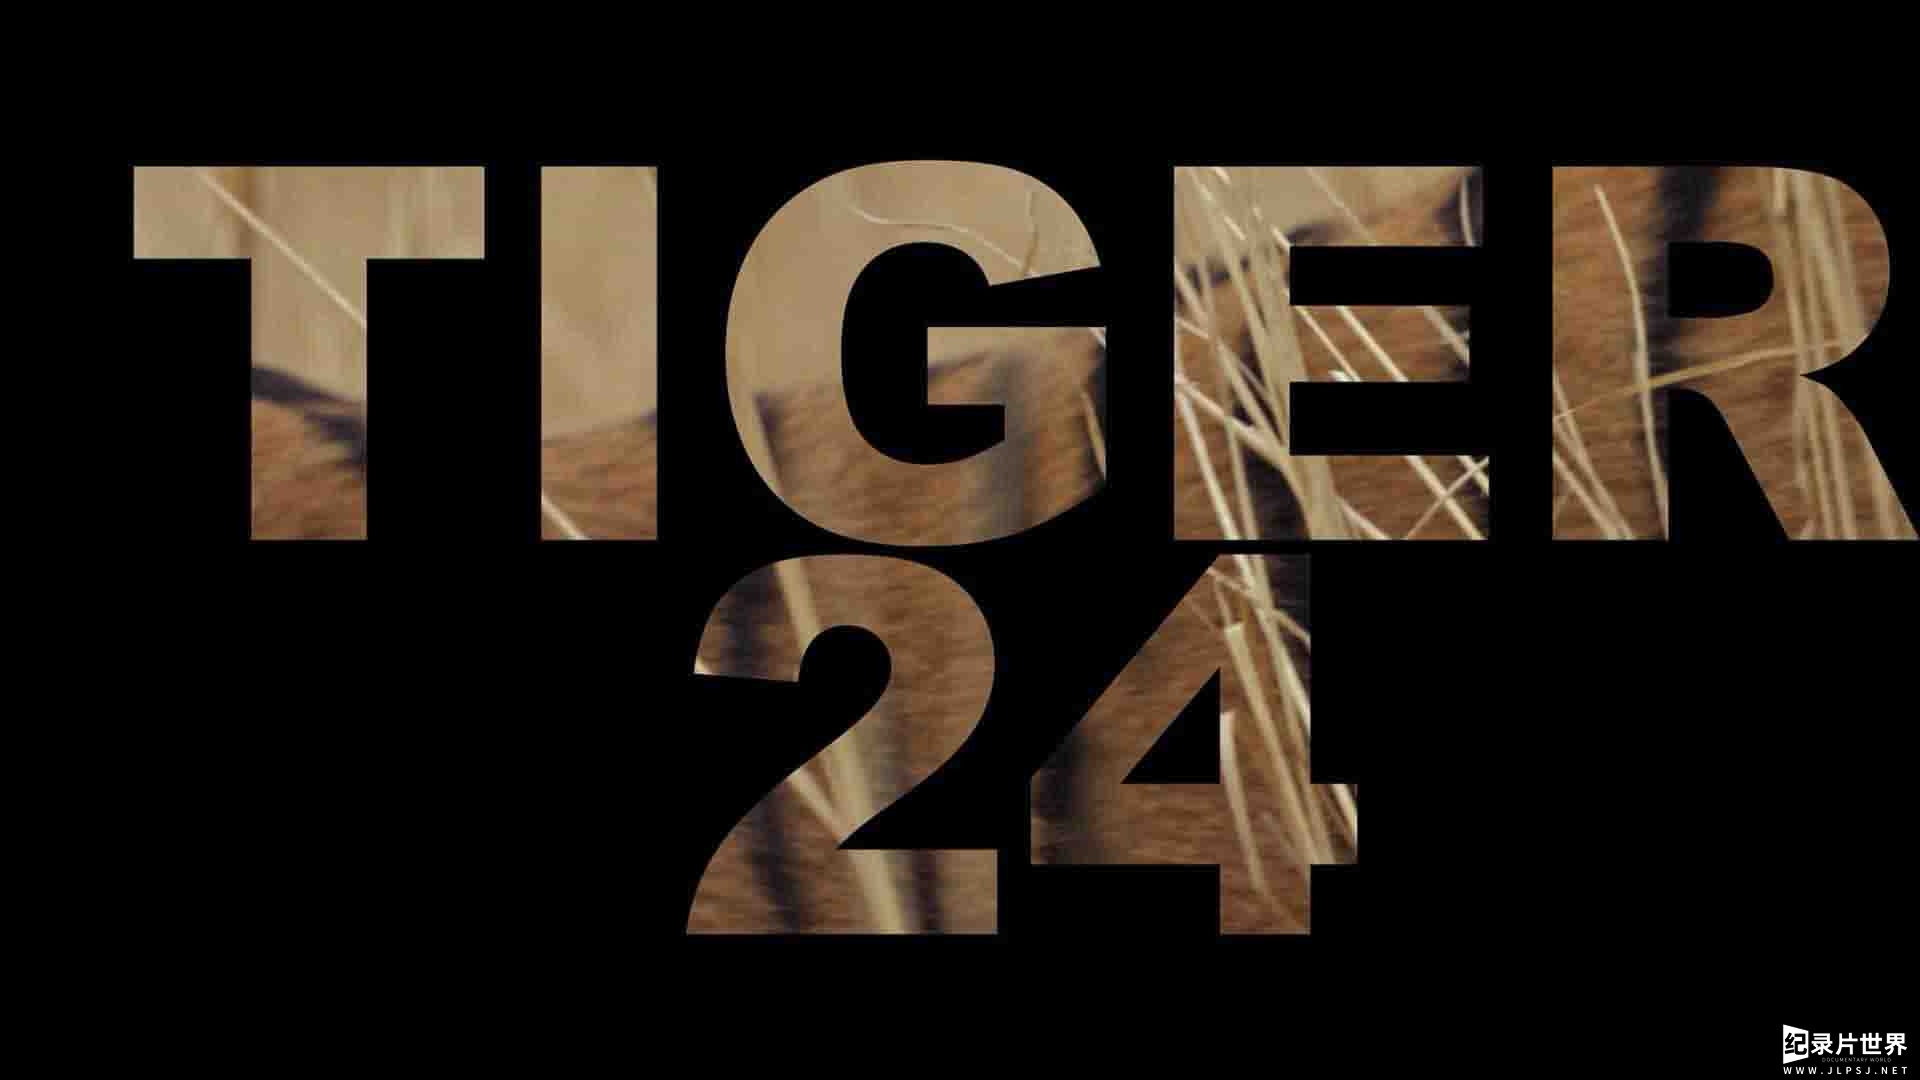 美国纪录片《24号老虎 Tiger 24 2022》全1集